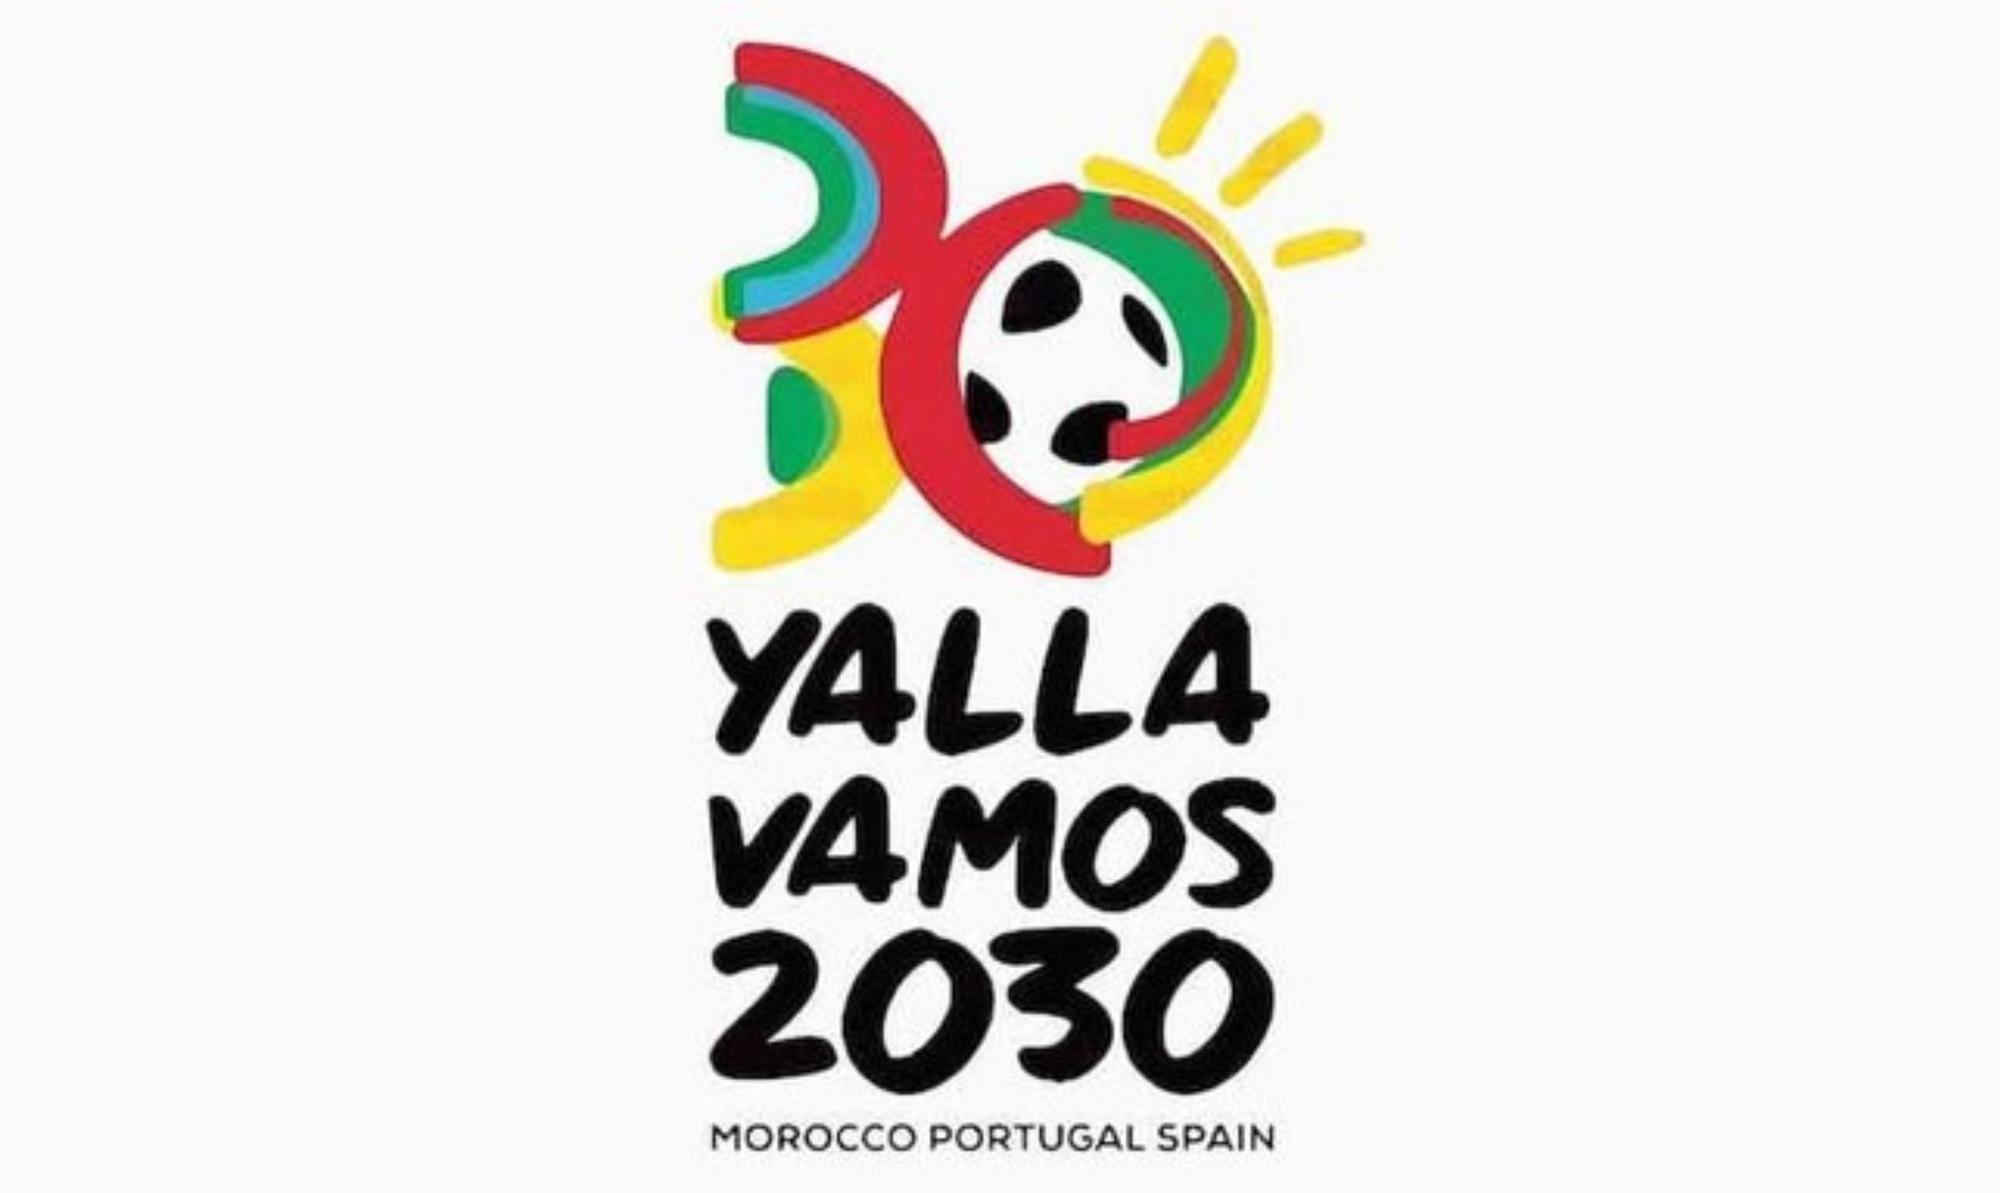 España, Portugal y Marruecos presentan el logo y el lema del Mundial 2030: "Yalla, vamos"